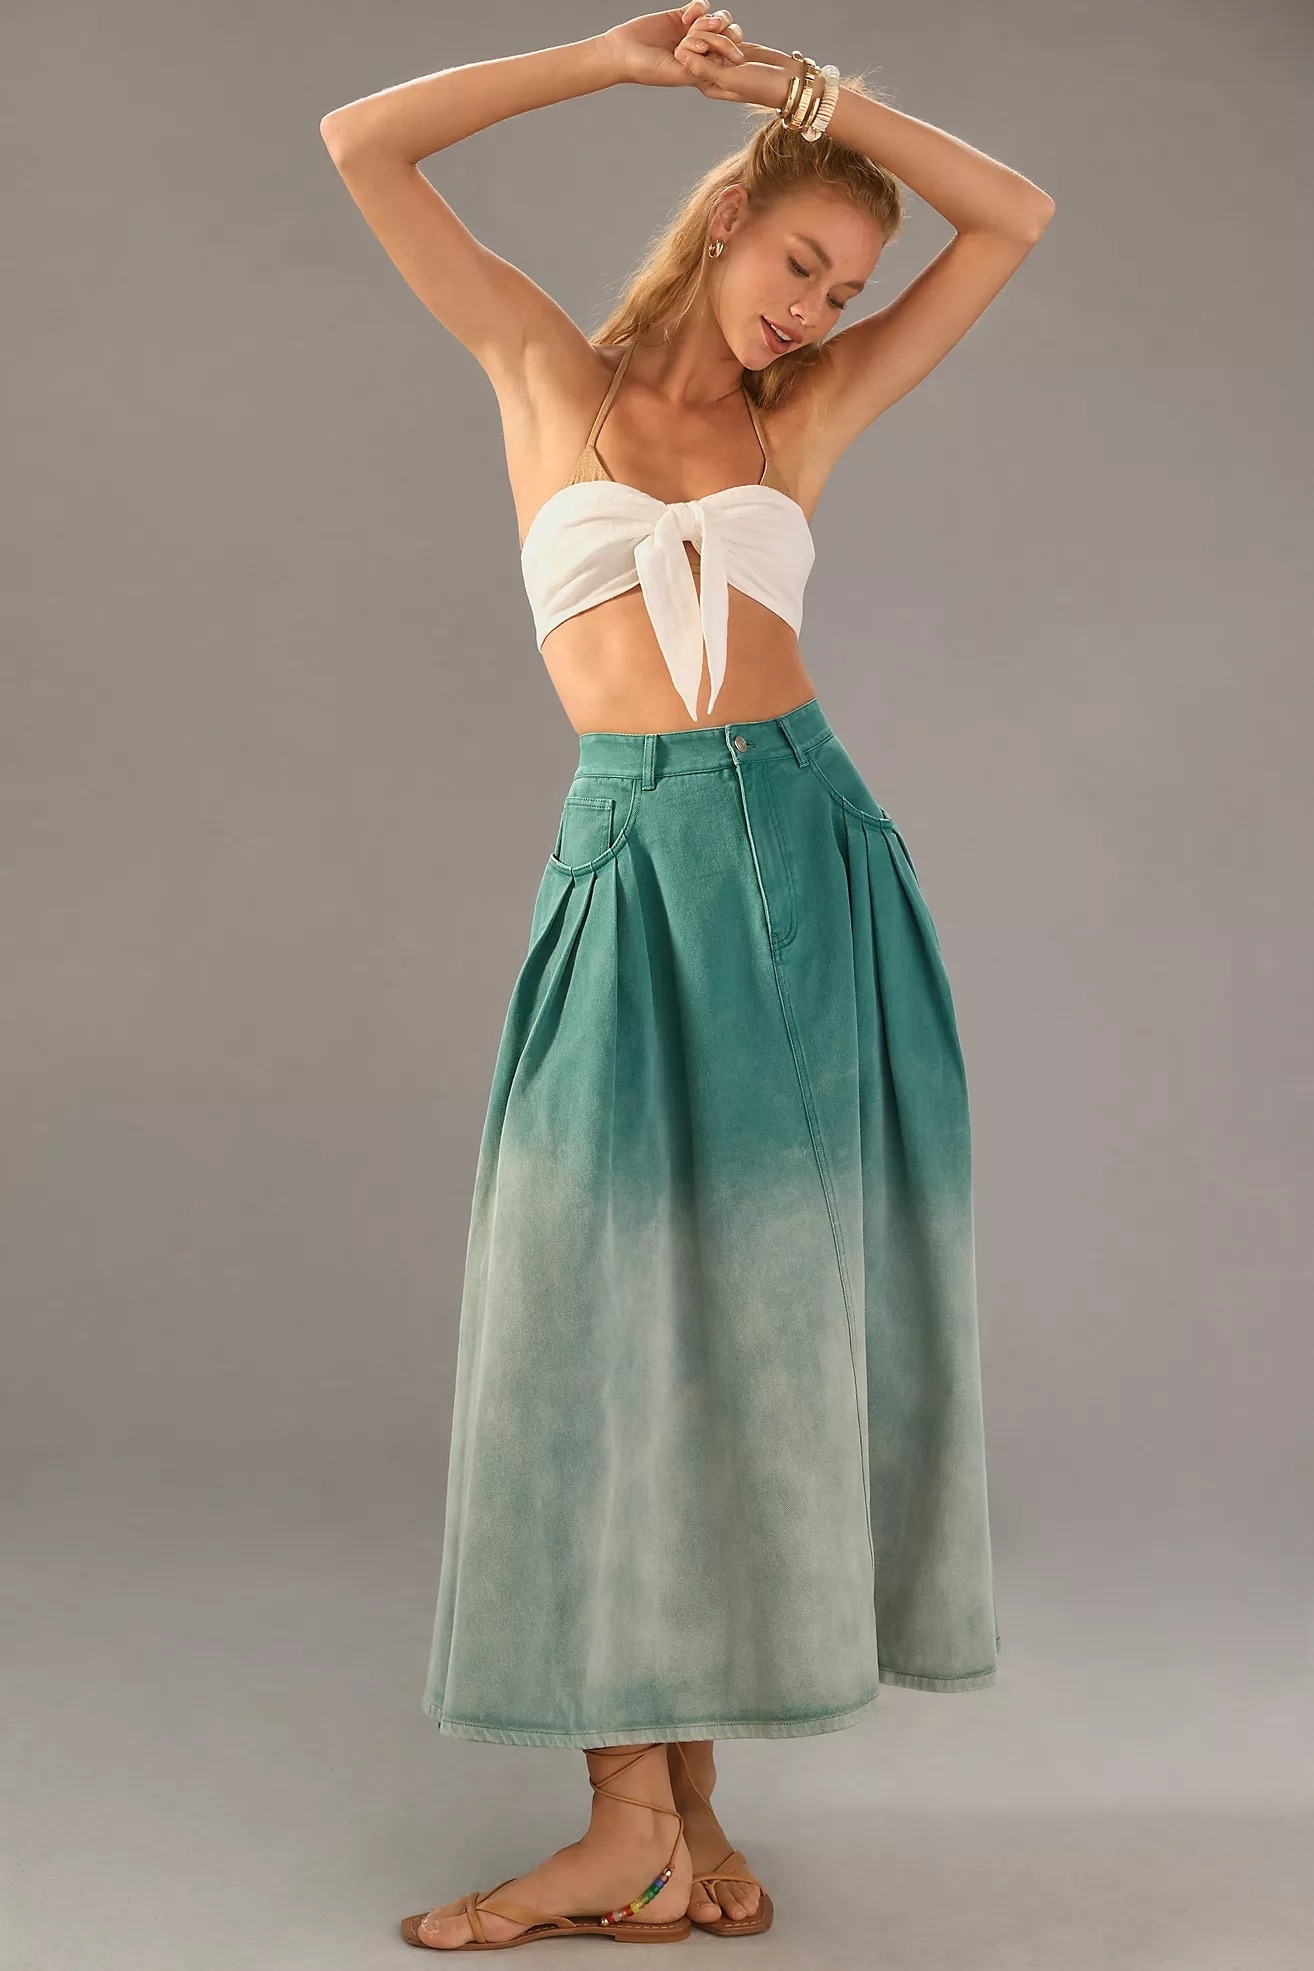 model wearing the ombre denim skirt